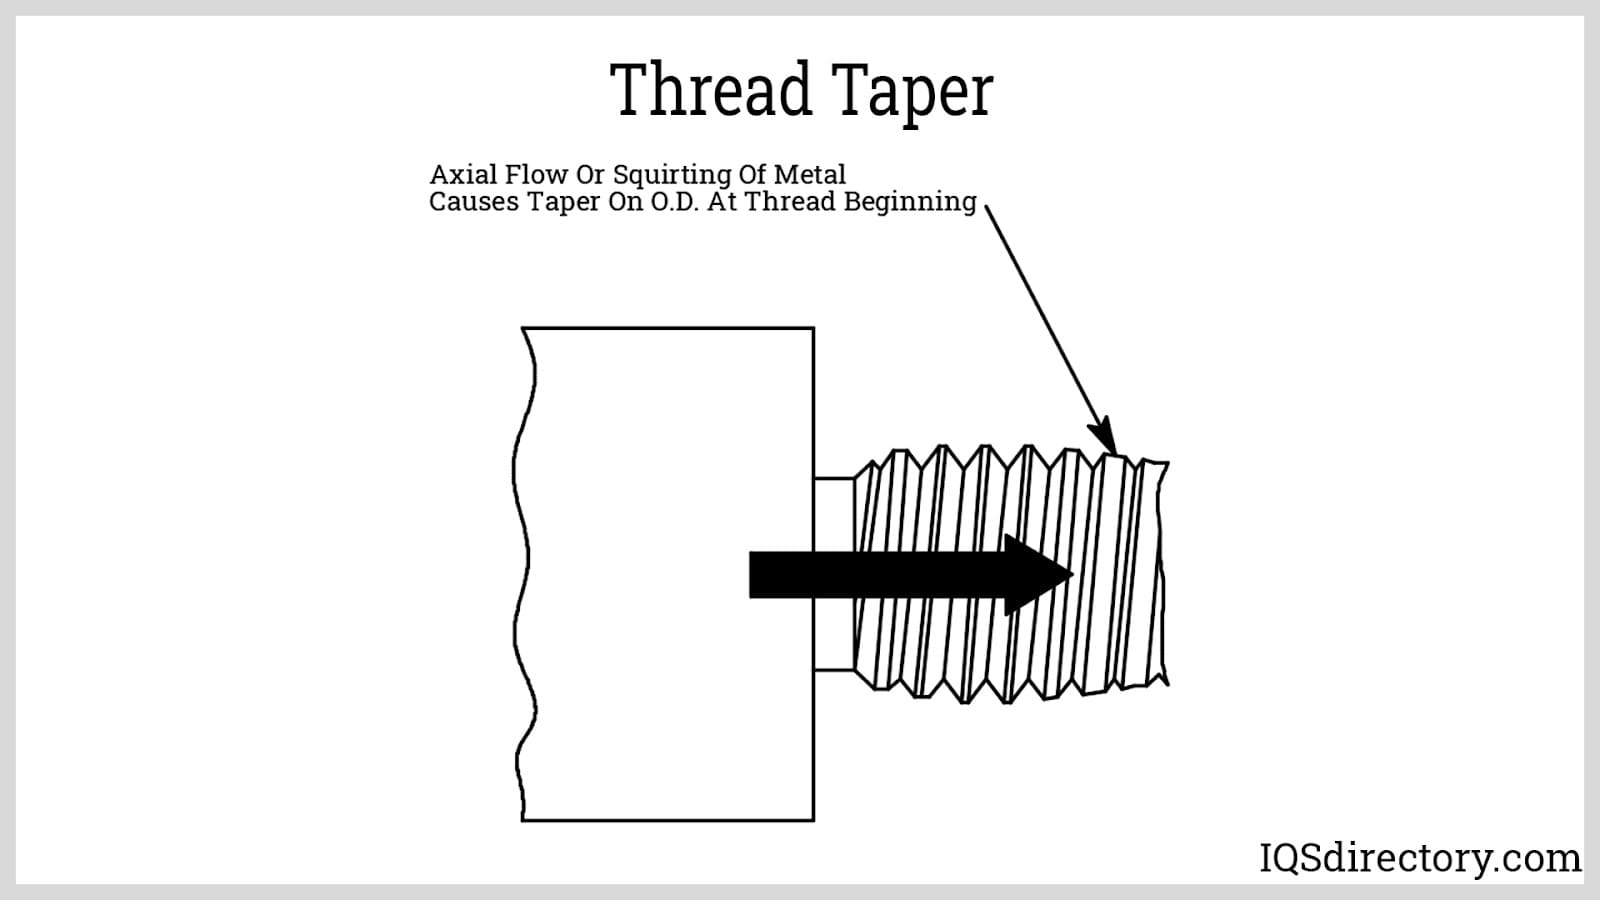 Thread Taper